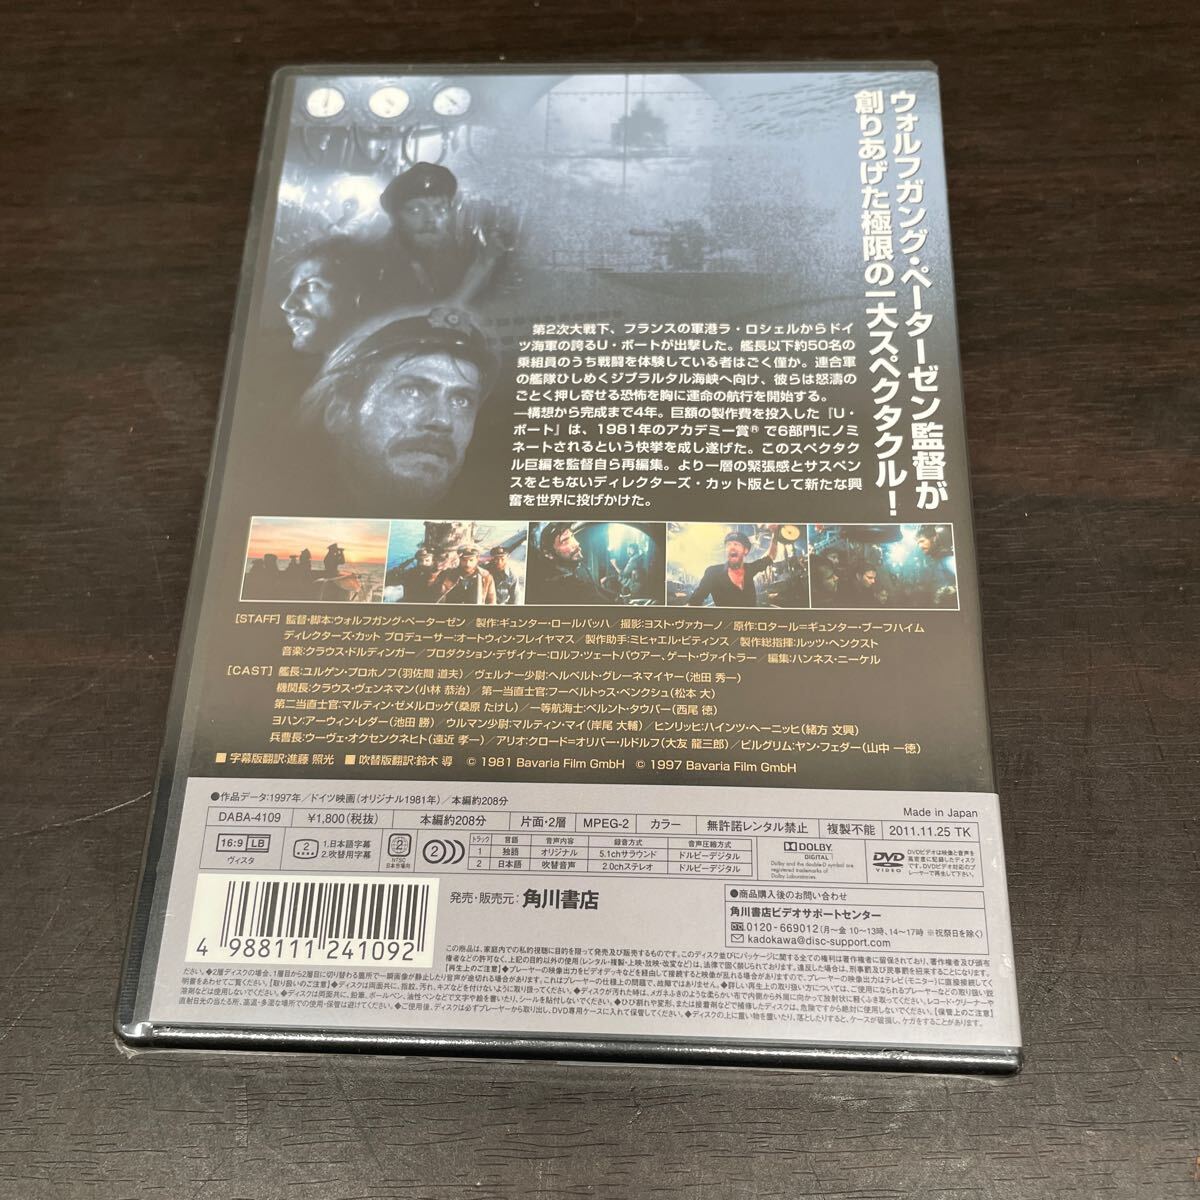 DVD диск U лодка tirekta-z* cut нераспечатанный товар (2)